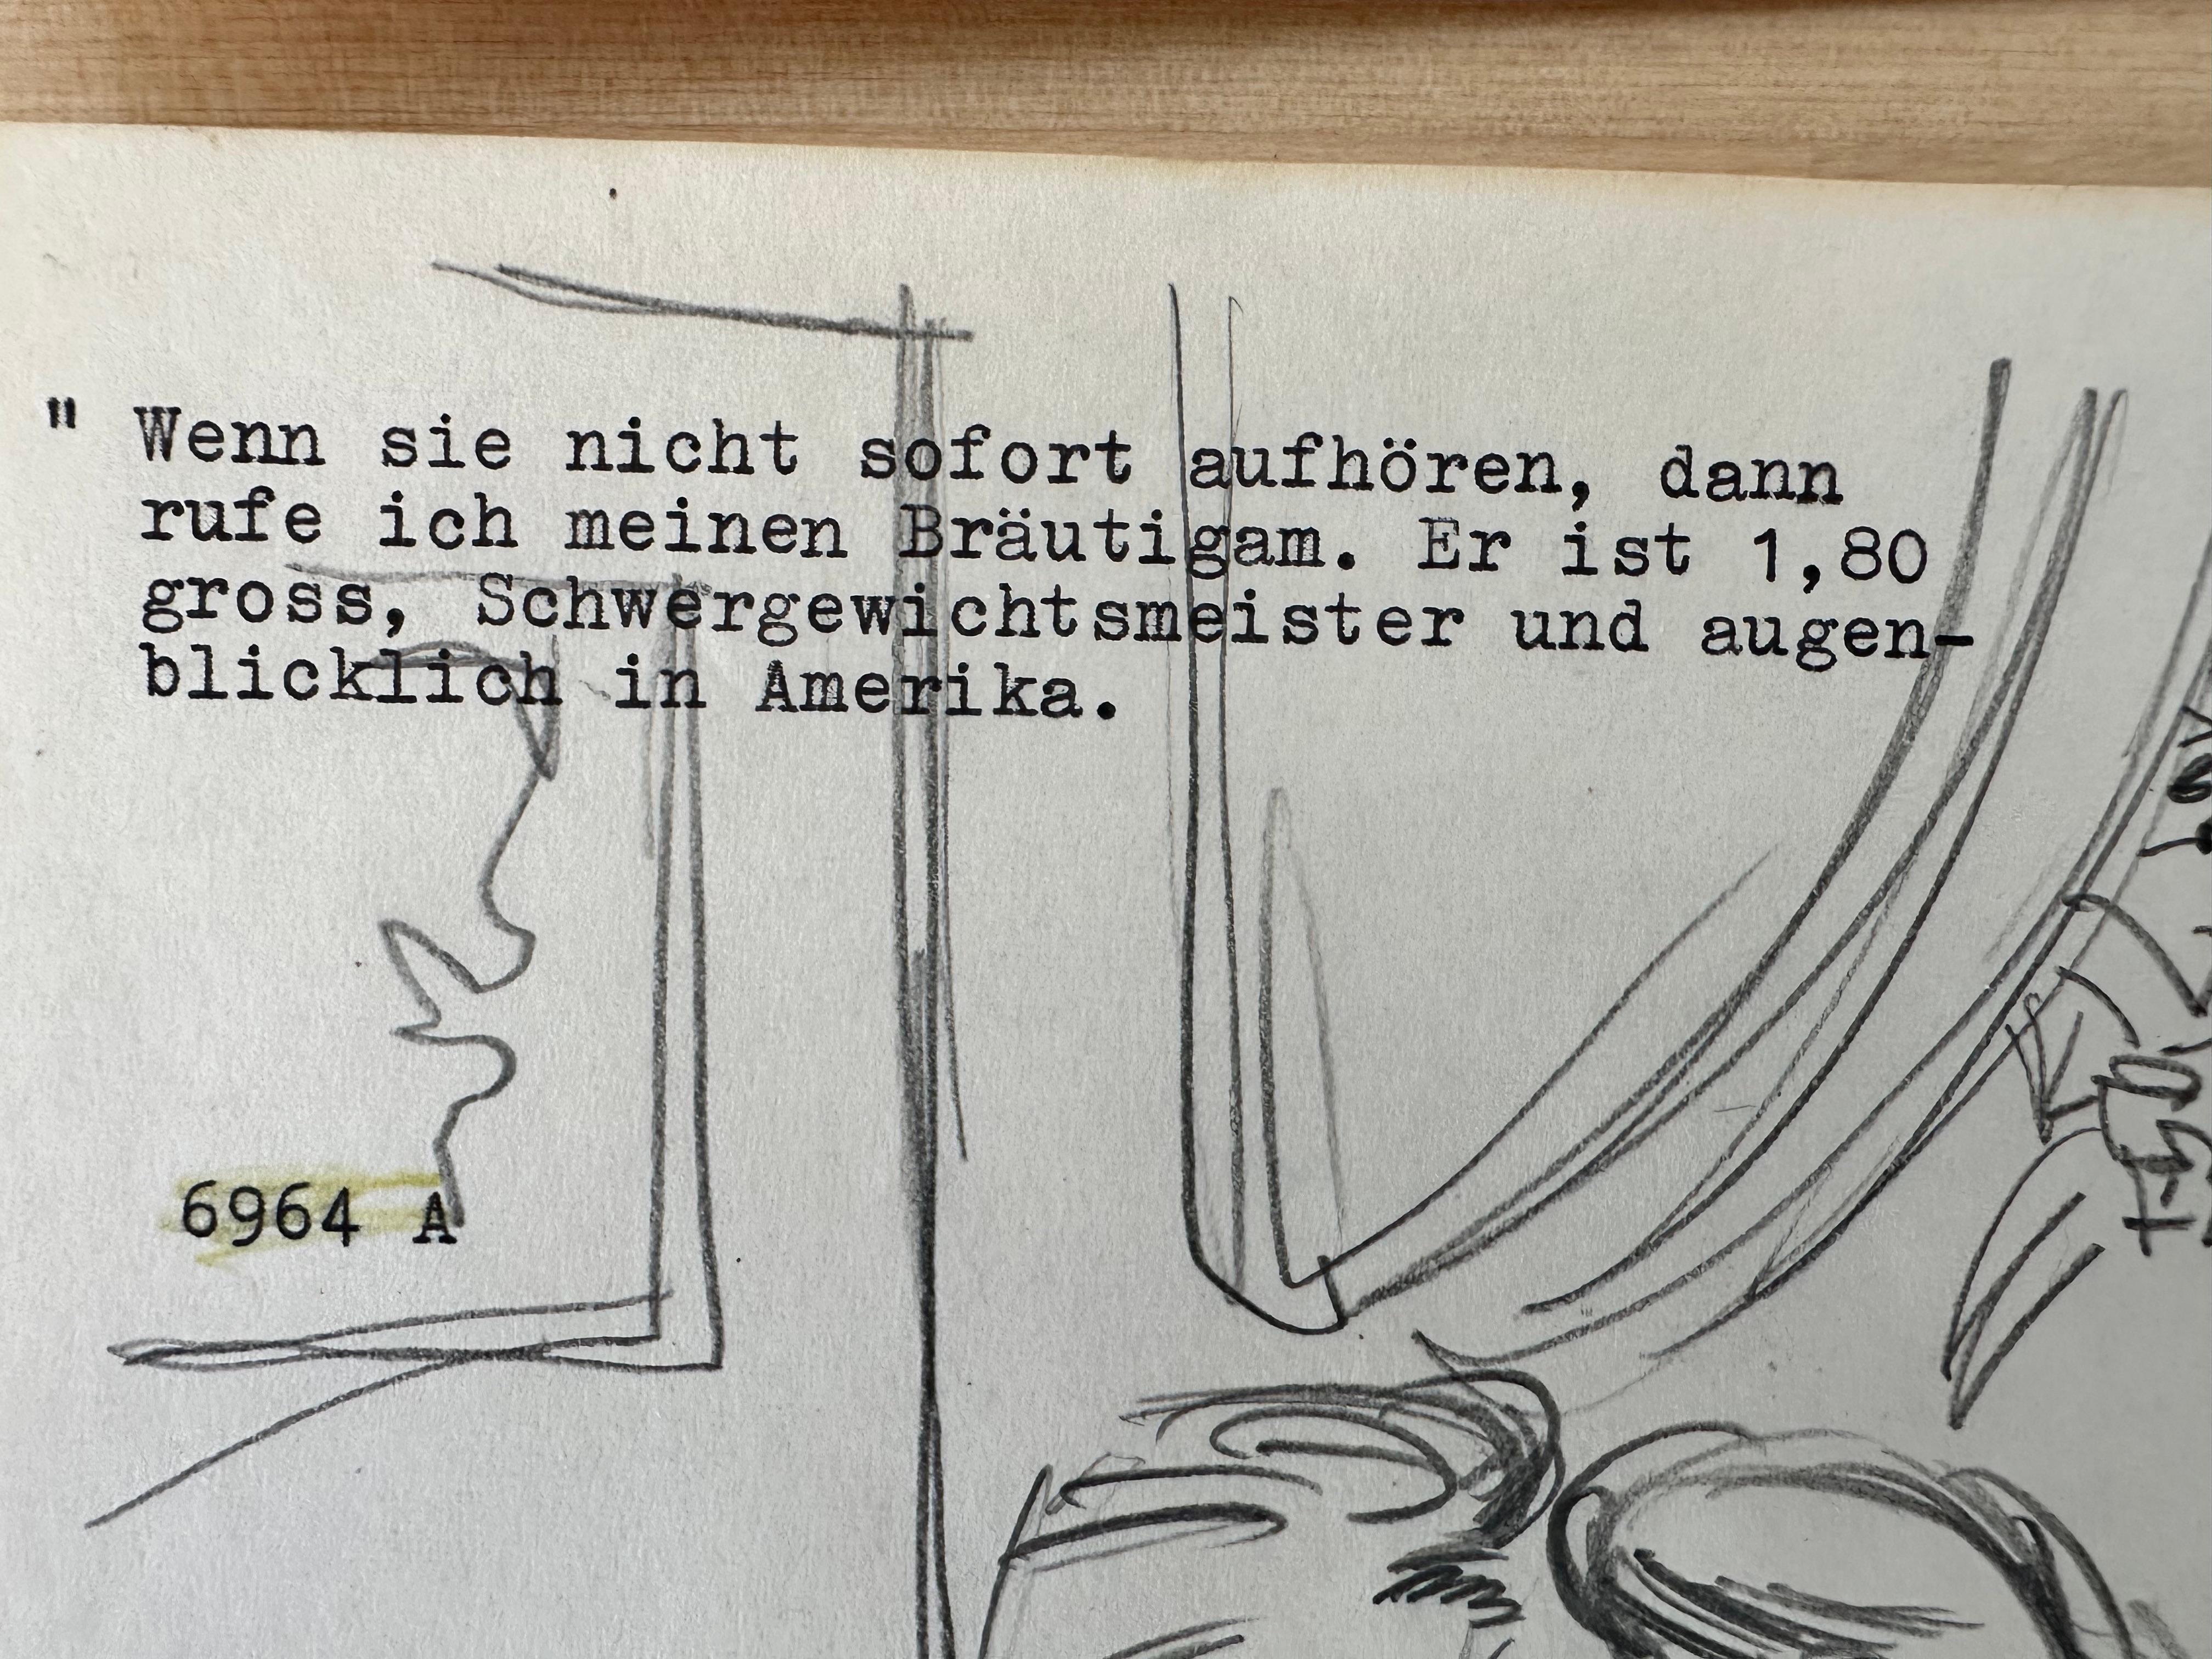 Cartoon-Skizze, ca. 1955. Bleistift auf Papier, Blattgröße 8,5 x 11 Zoll. Unsigniert mit Vermerken des Herausgebers. 
Aus einer Gruppe von Skizzen, die als Vorentwürfe für die Genehmigung durch die Redaktion gedacht waren. 